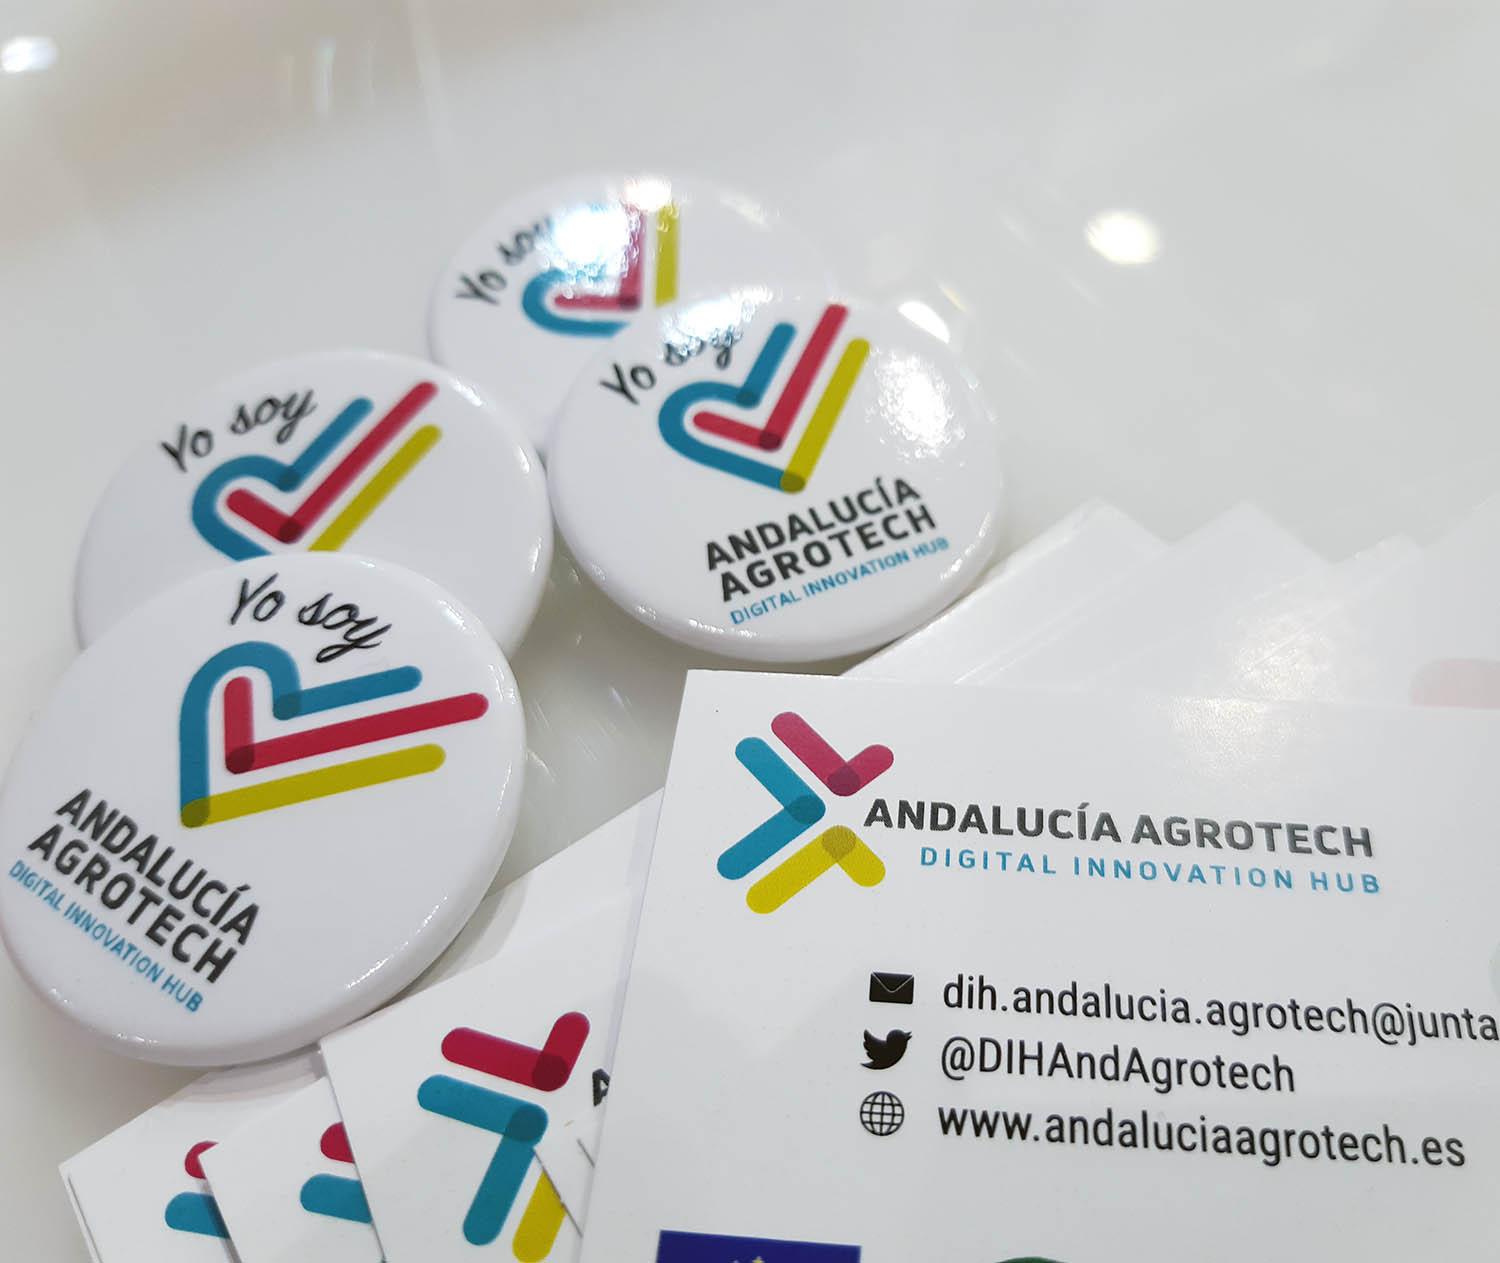 Europa reconoce con la máxima distinción de excelencia a Andalucía Agrotech DIH